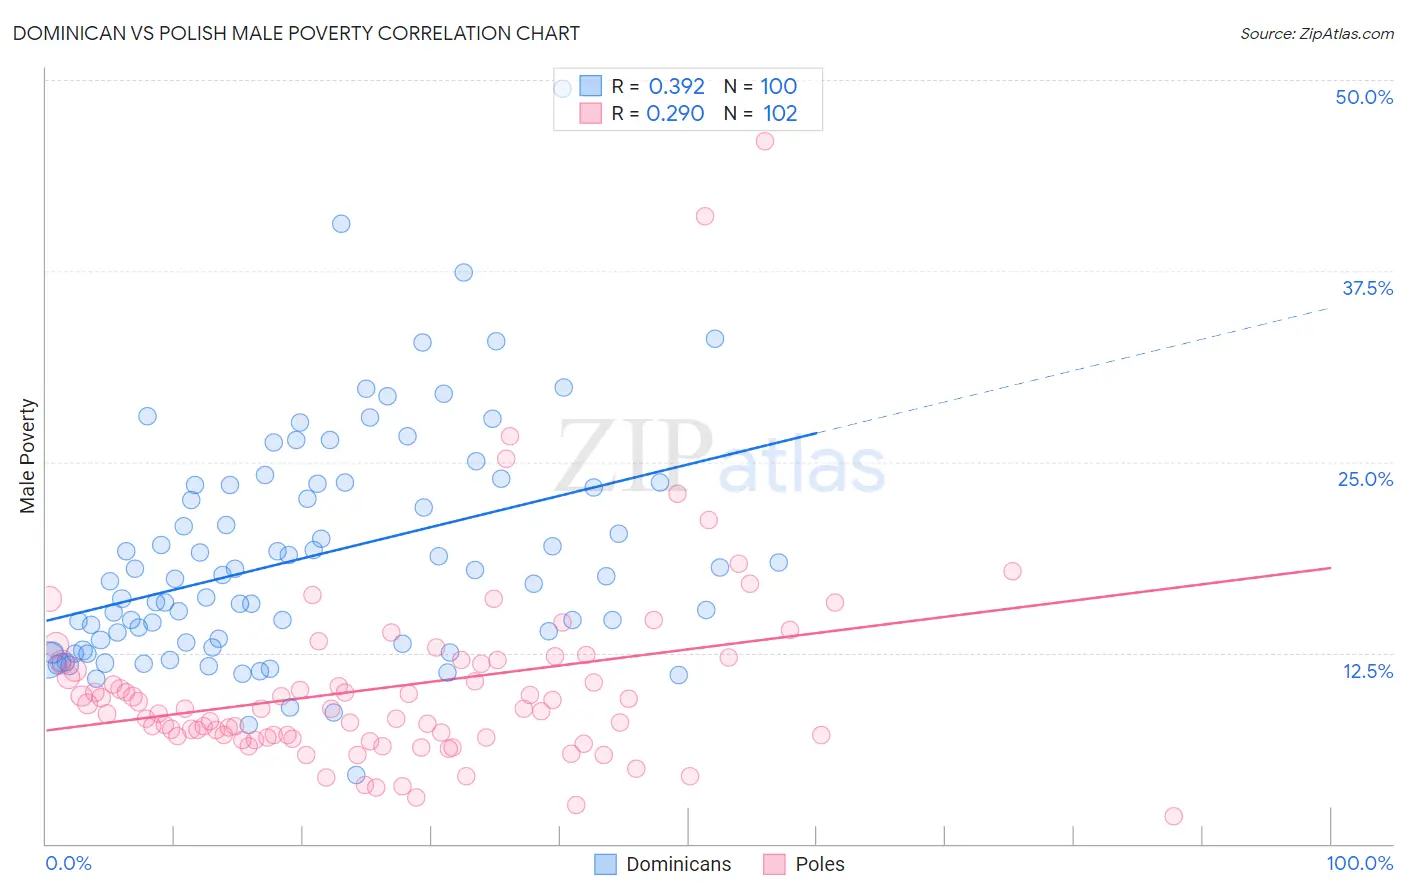 Dominican vs Polish Male Poverty